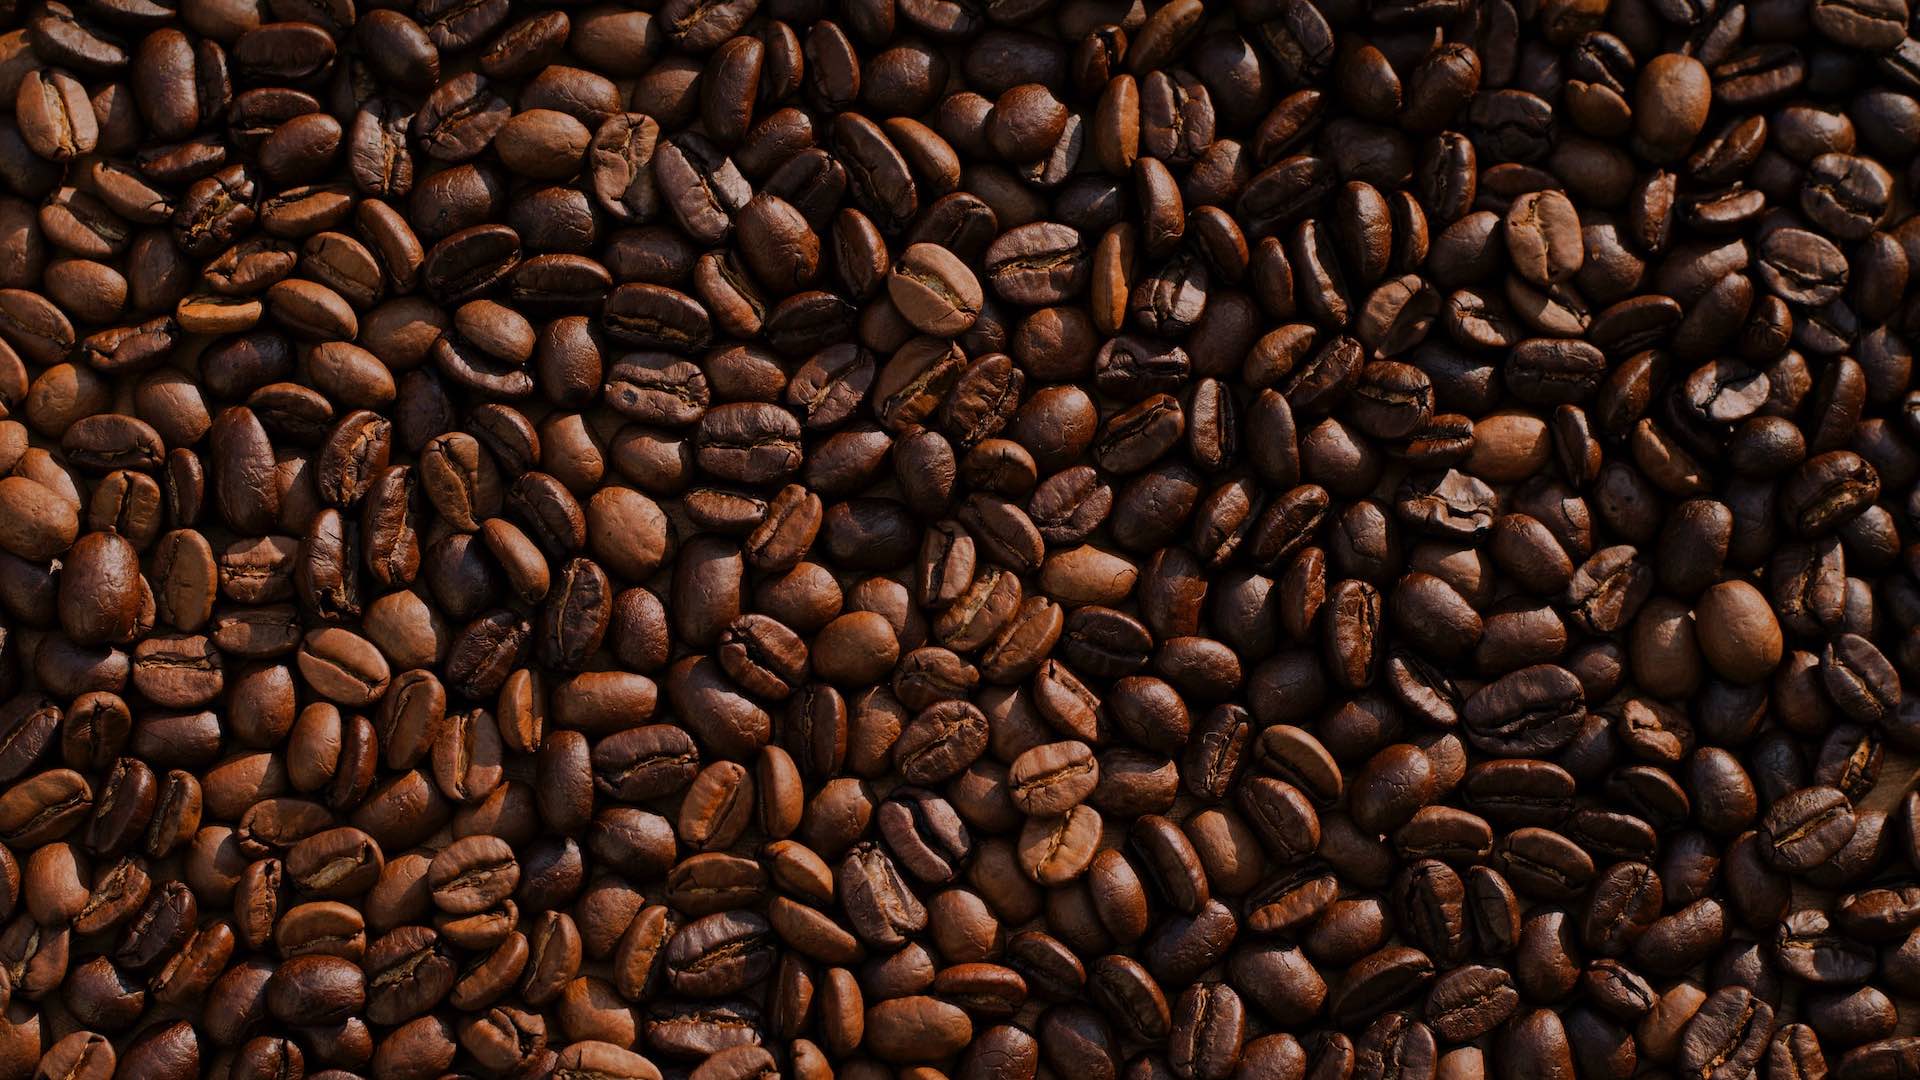 Кофе без сахара помогает снизить вес, говорят исследователи из Испании